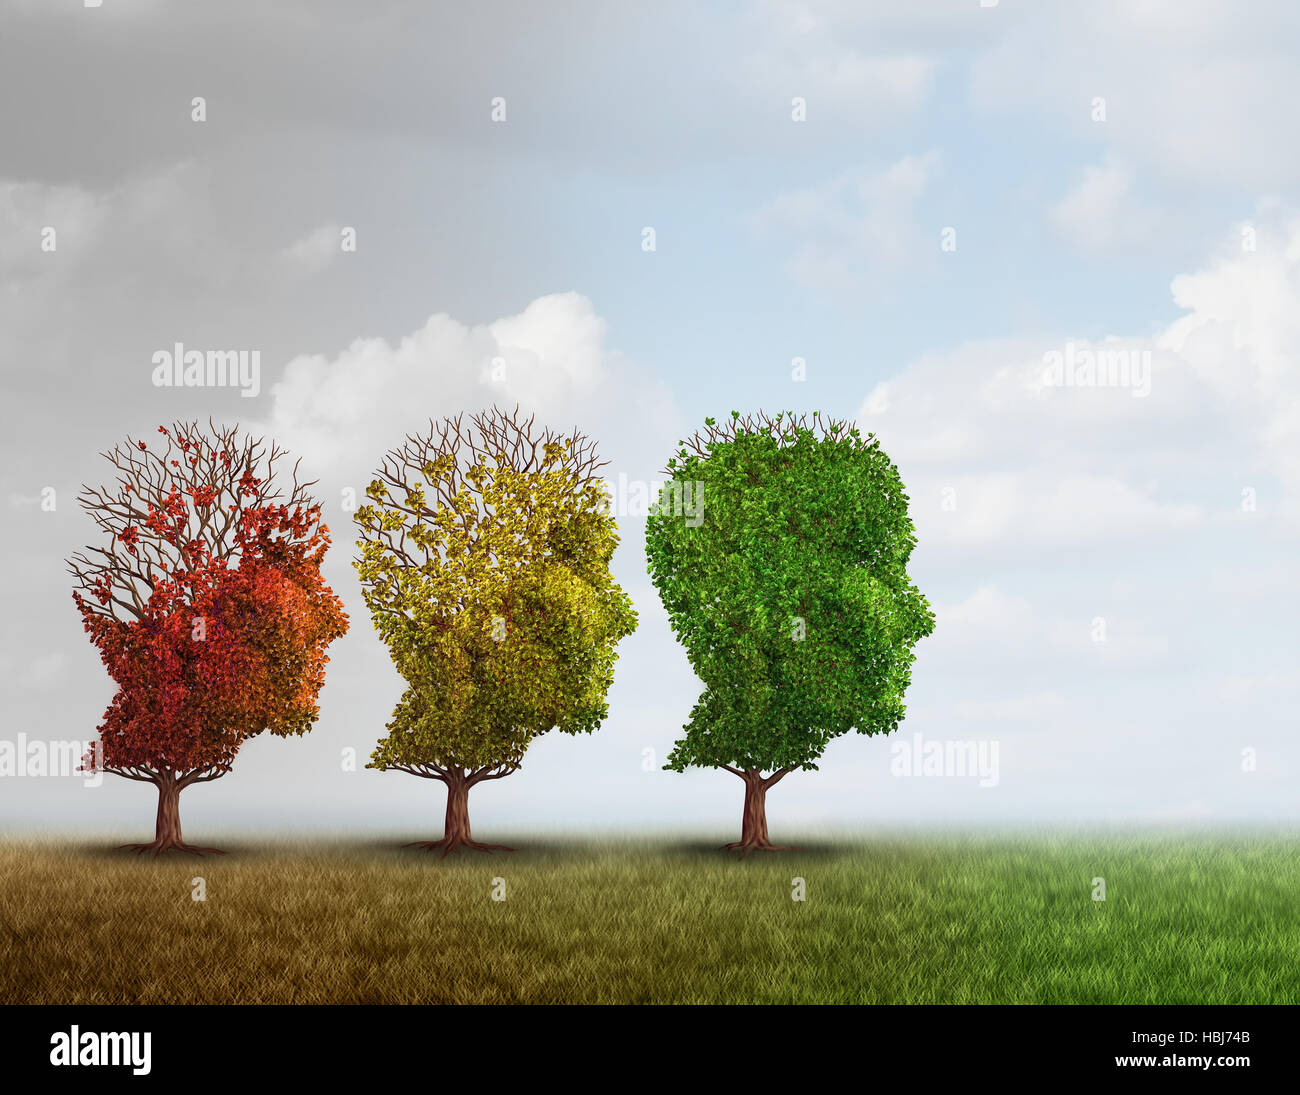 Behandlung von Demenz und Alzheimer Gehirn Speicher Krankheit Therapiekonzept als altem Baumbestand erholt als Neurologie oder Psychologie Heilung Metapher mit 3D illus Stockfoto